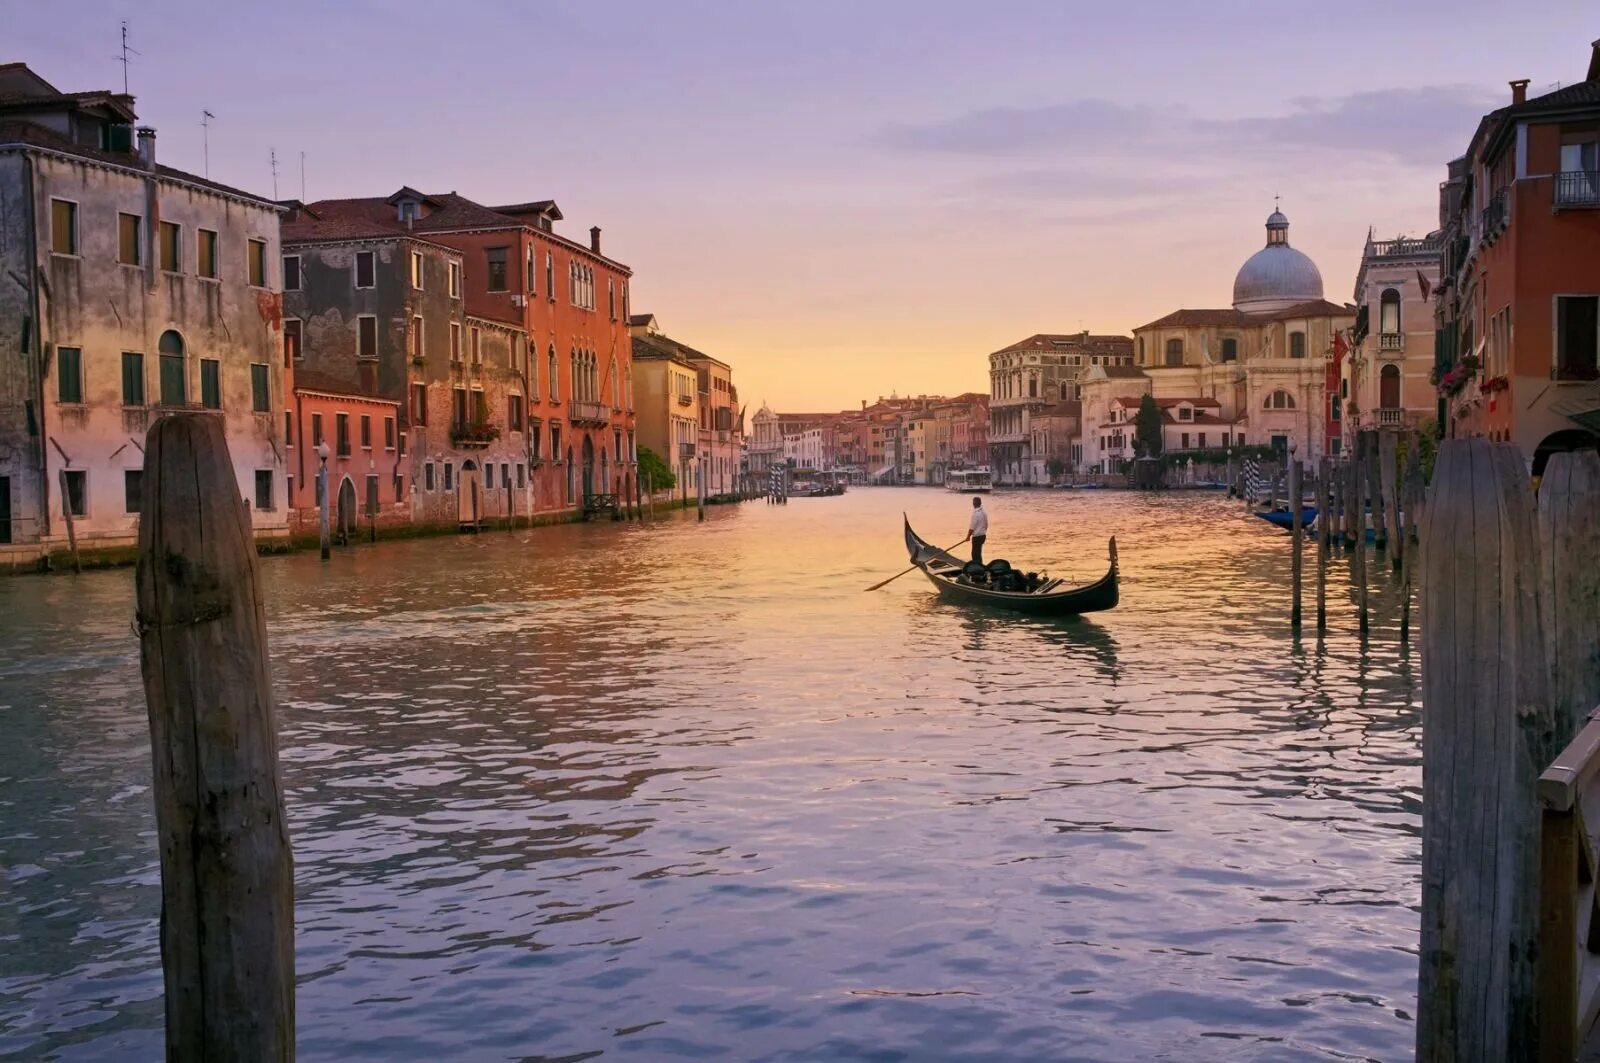 Италия гондольеры. Италия Венеция гондолы. Венеция каналы гондолы. Гранд канал Италия гондолы. Река в венеции